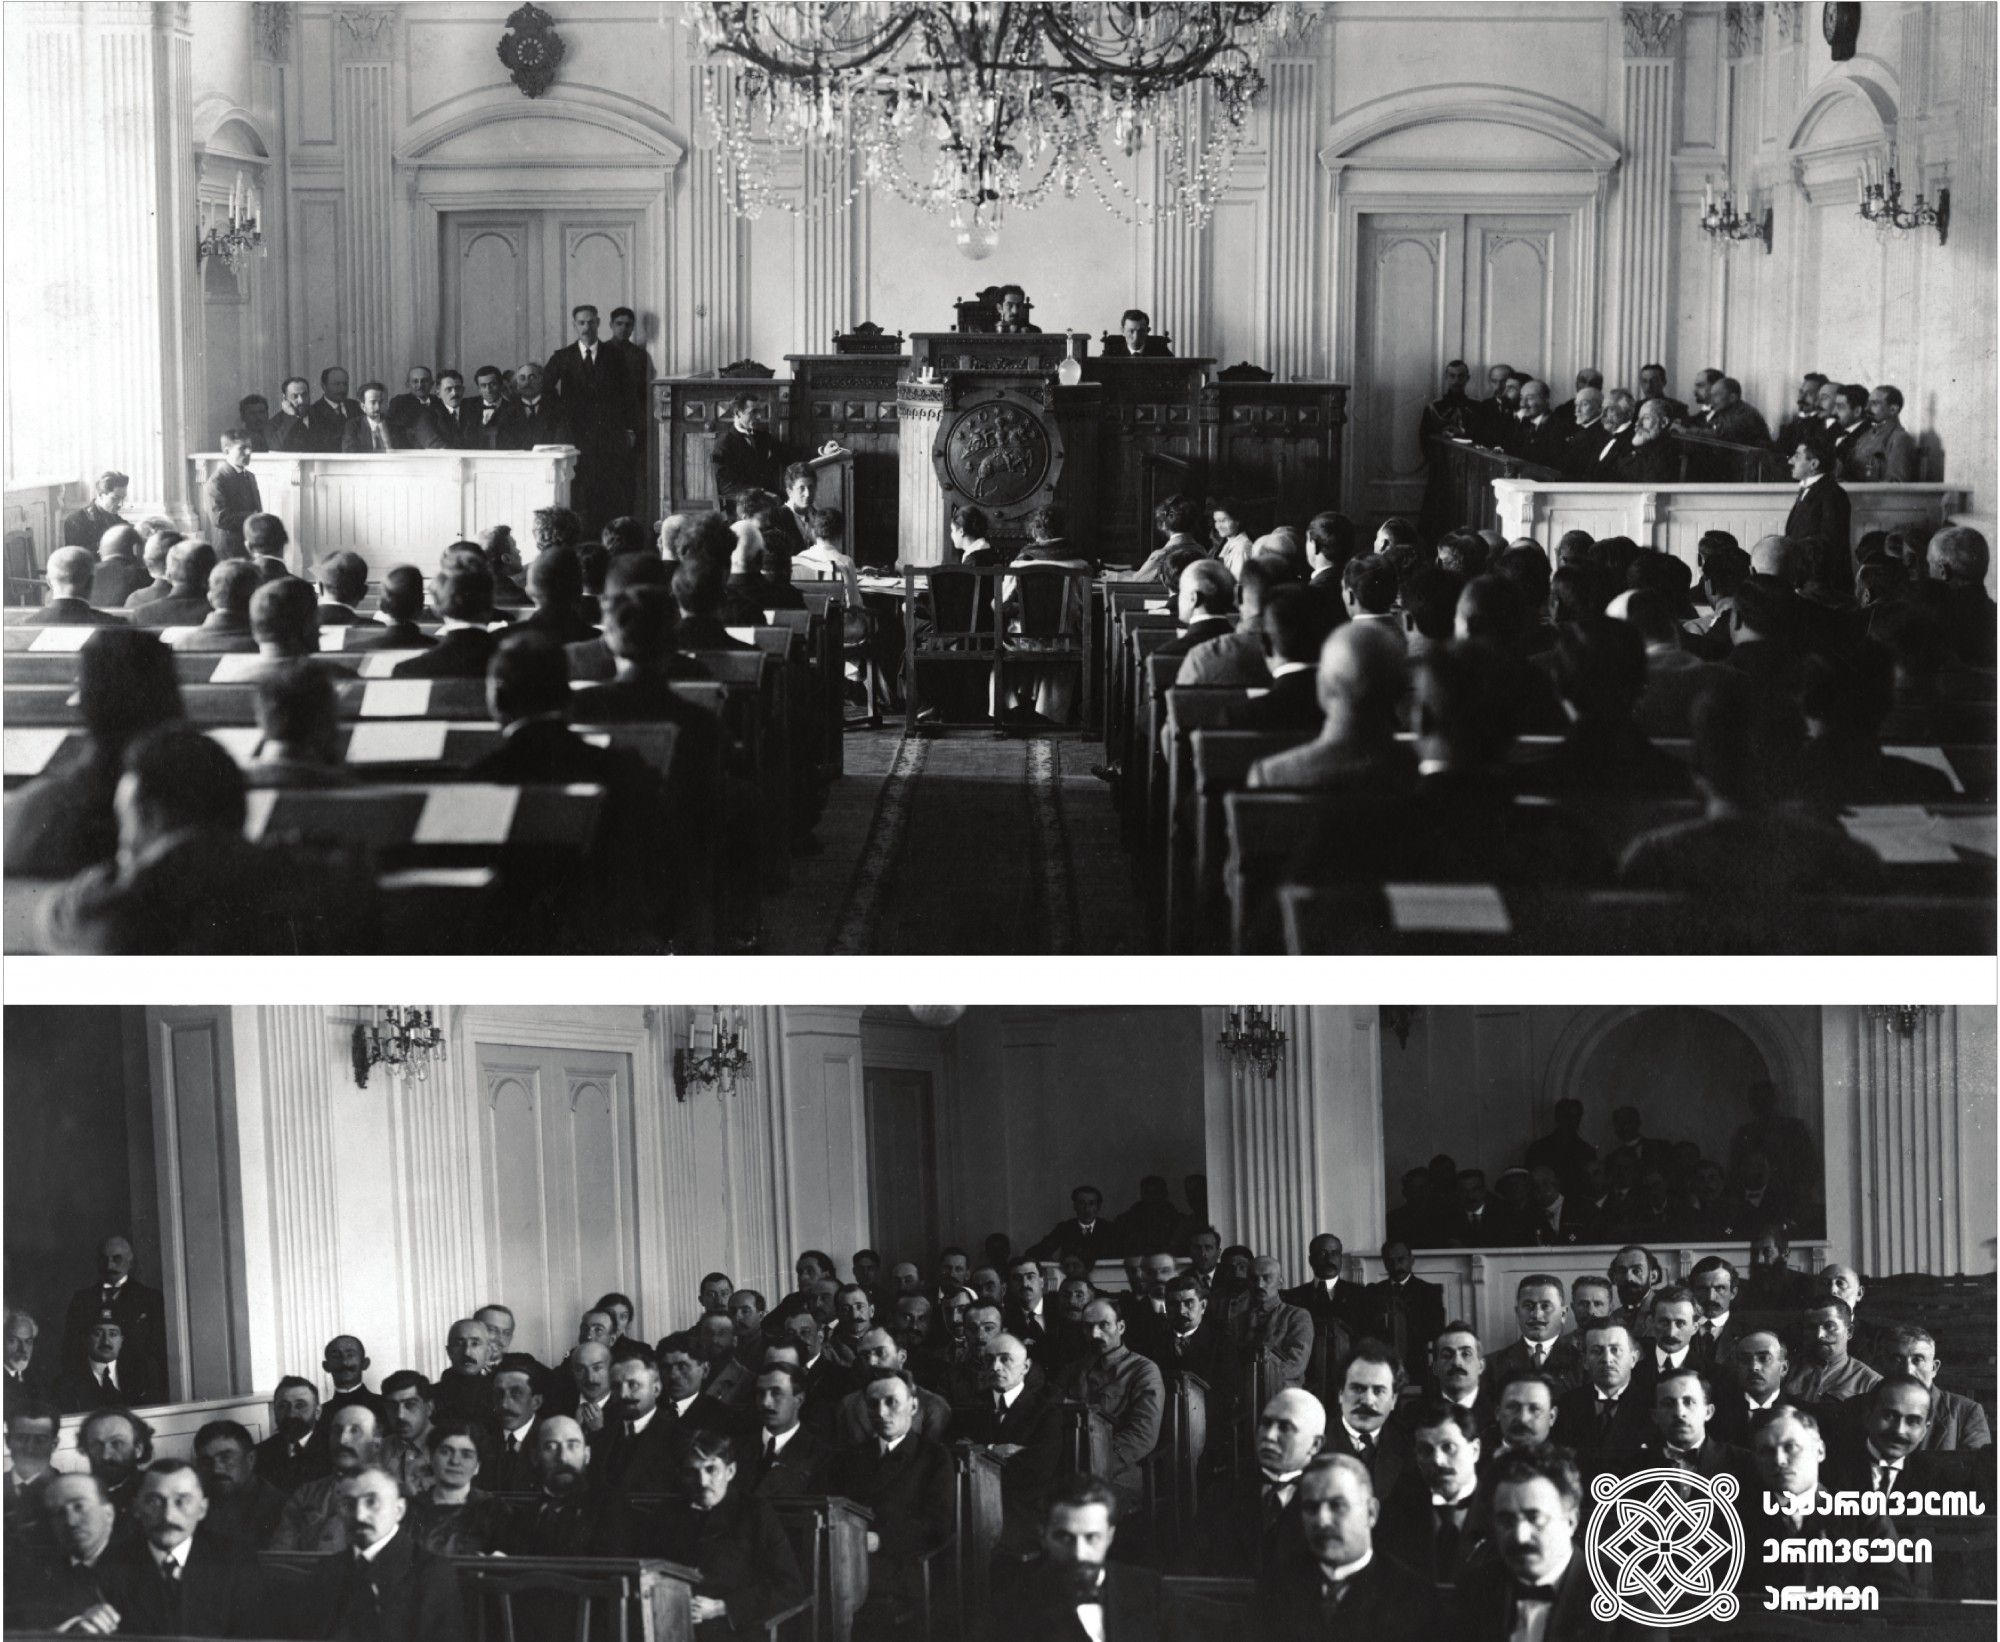 საქართველოს დამფუძნებელი კრების პირველი სხდომა, რომელსაც ამავე კრების წევრი იოანის ფაშალიდისიც ესწრებოდა. <br>
1919 წლის 12 მარტი, თბილისი. <br>
The first sitting of the Constituent Assembly of Georgia. <br>
The session is also attended by Ioannis Passalidis. <br>
March 12, 1919, Tbilisi.